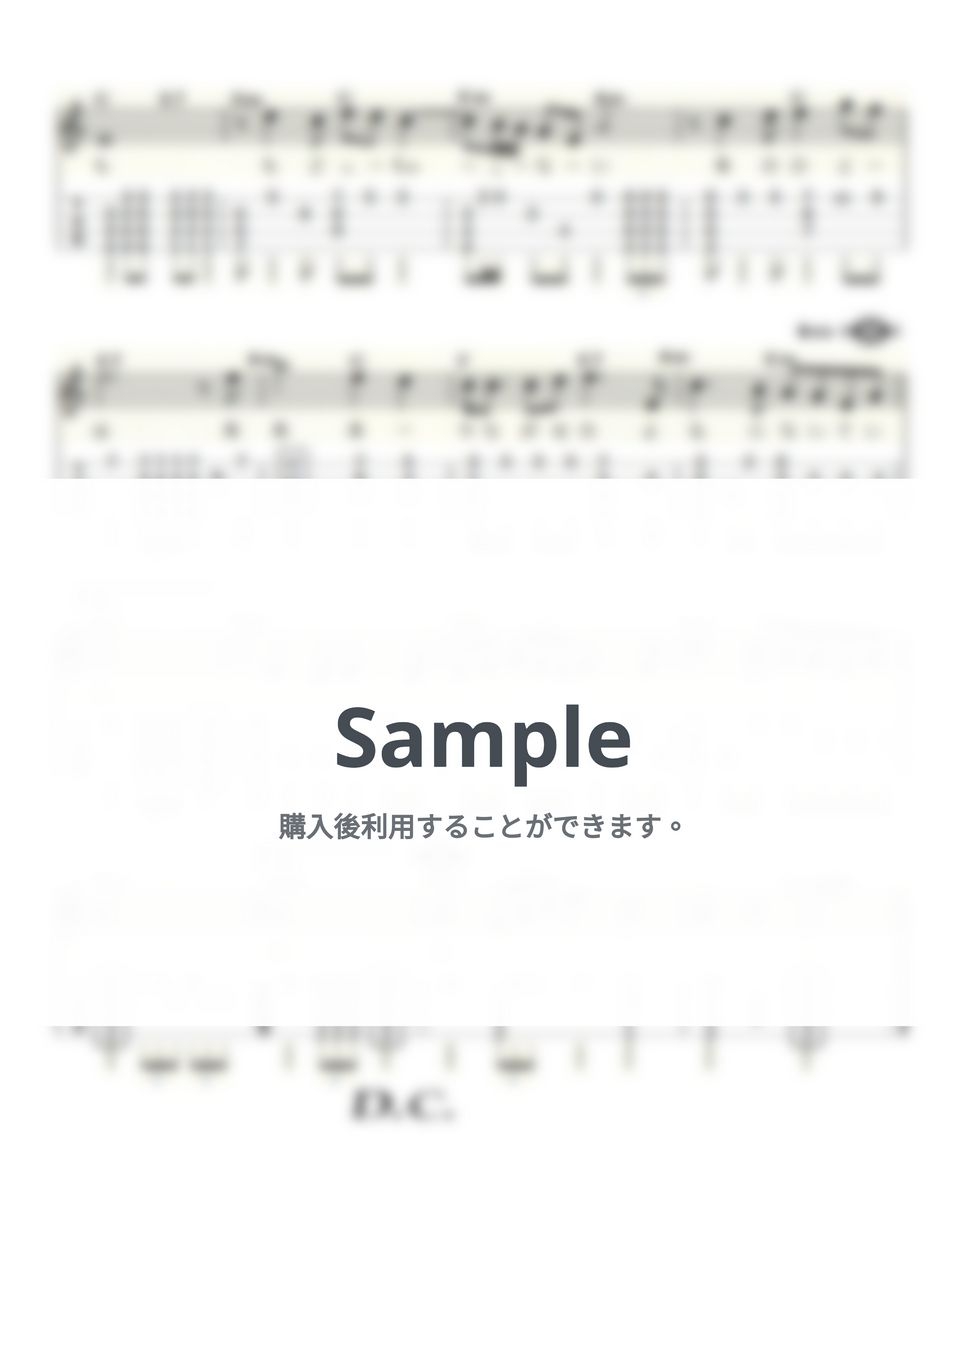 美川憲一 - 柳ヶ瀬ブルース (ｳｸﾚﾚｿﾛ / High-G・Low-G / 中級) by ukulelepapa